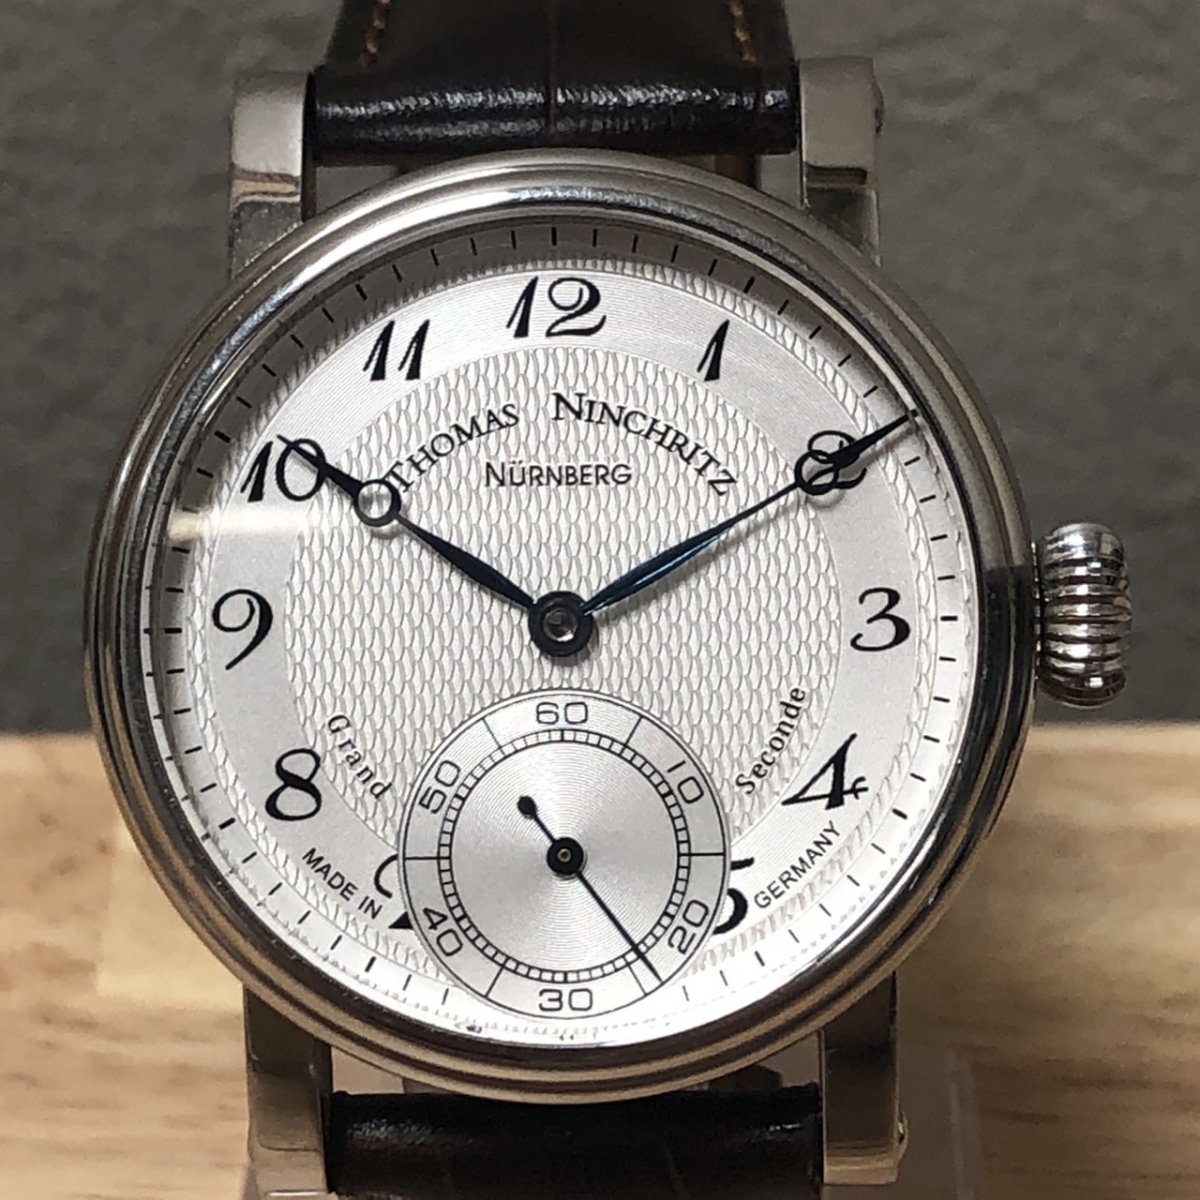 トーマスニンクリッツのシェルマン別注 Grand Seconde グランドセコンド TN200 シースルーバック SS 42mm 手巻き腕時計の買取実績です。